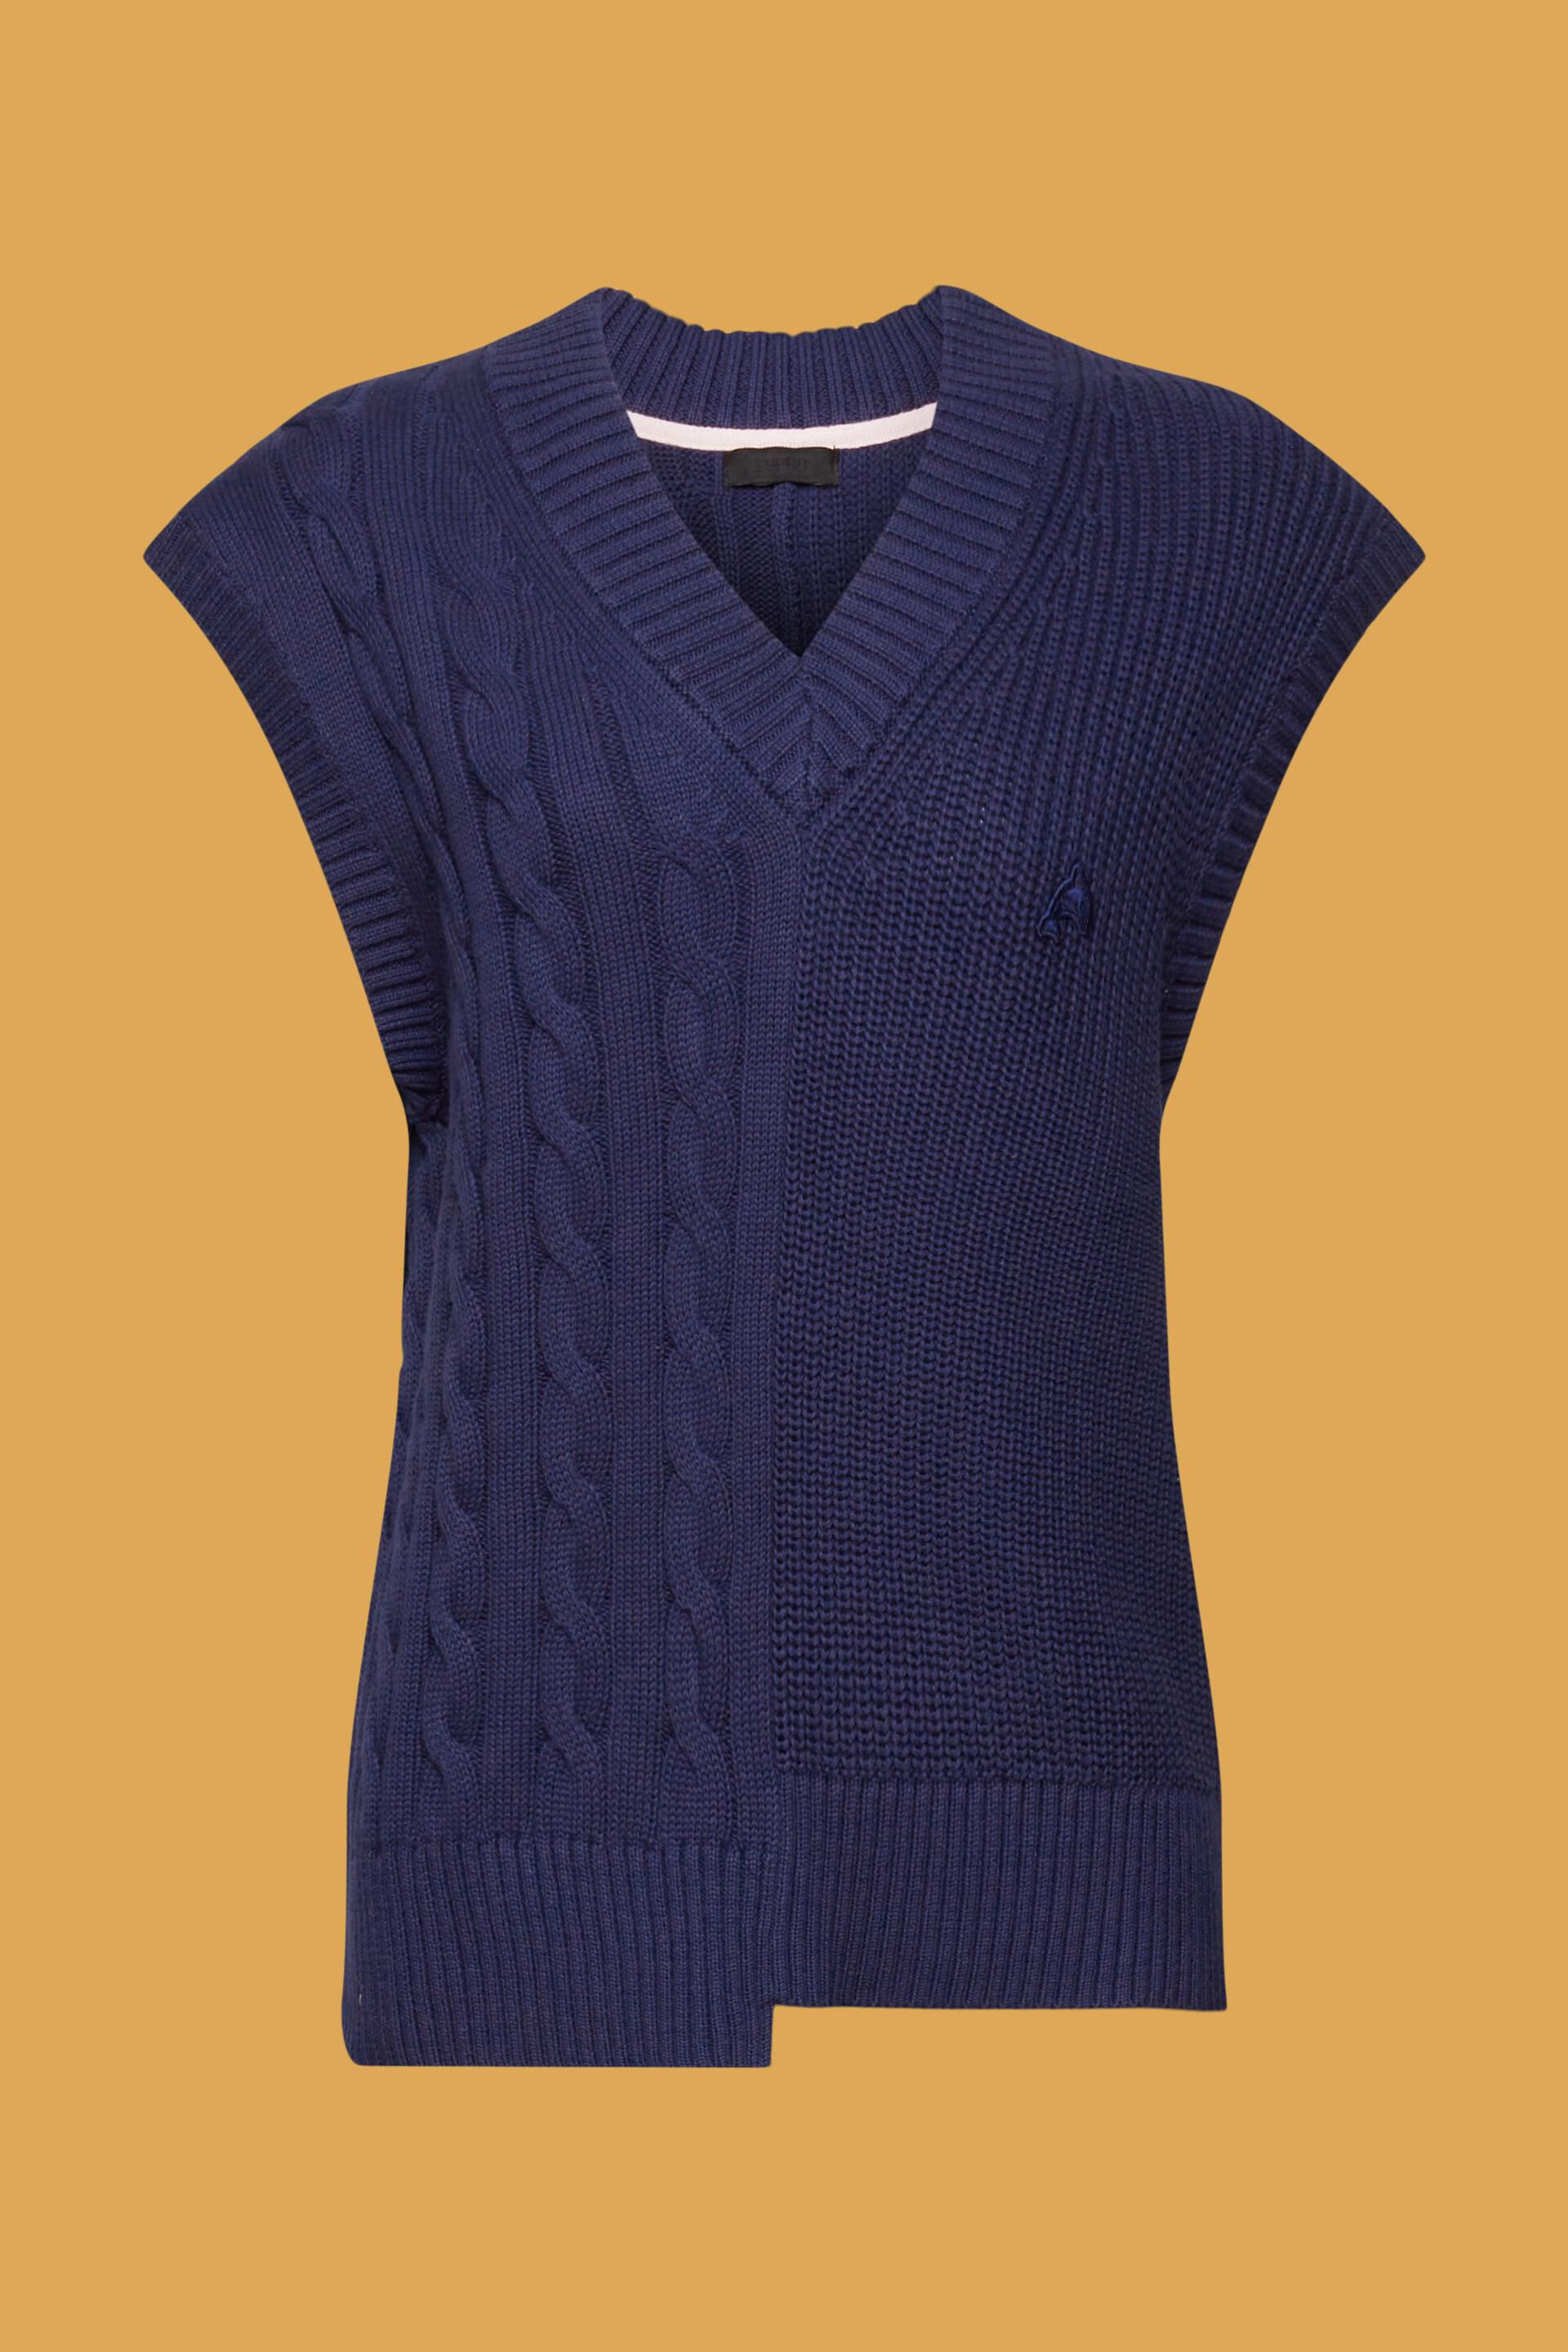 Esprit Damen Pullover aus Grobstrick mit gemischten Mustern